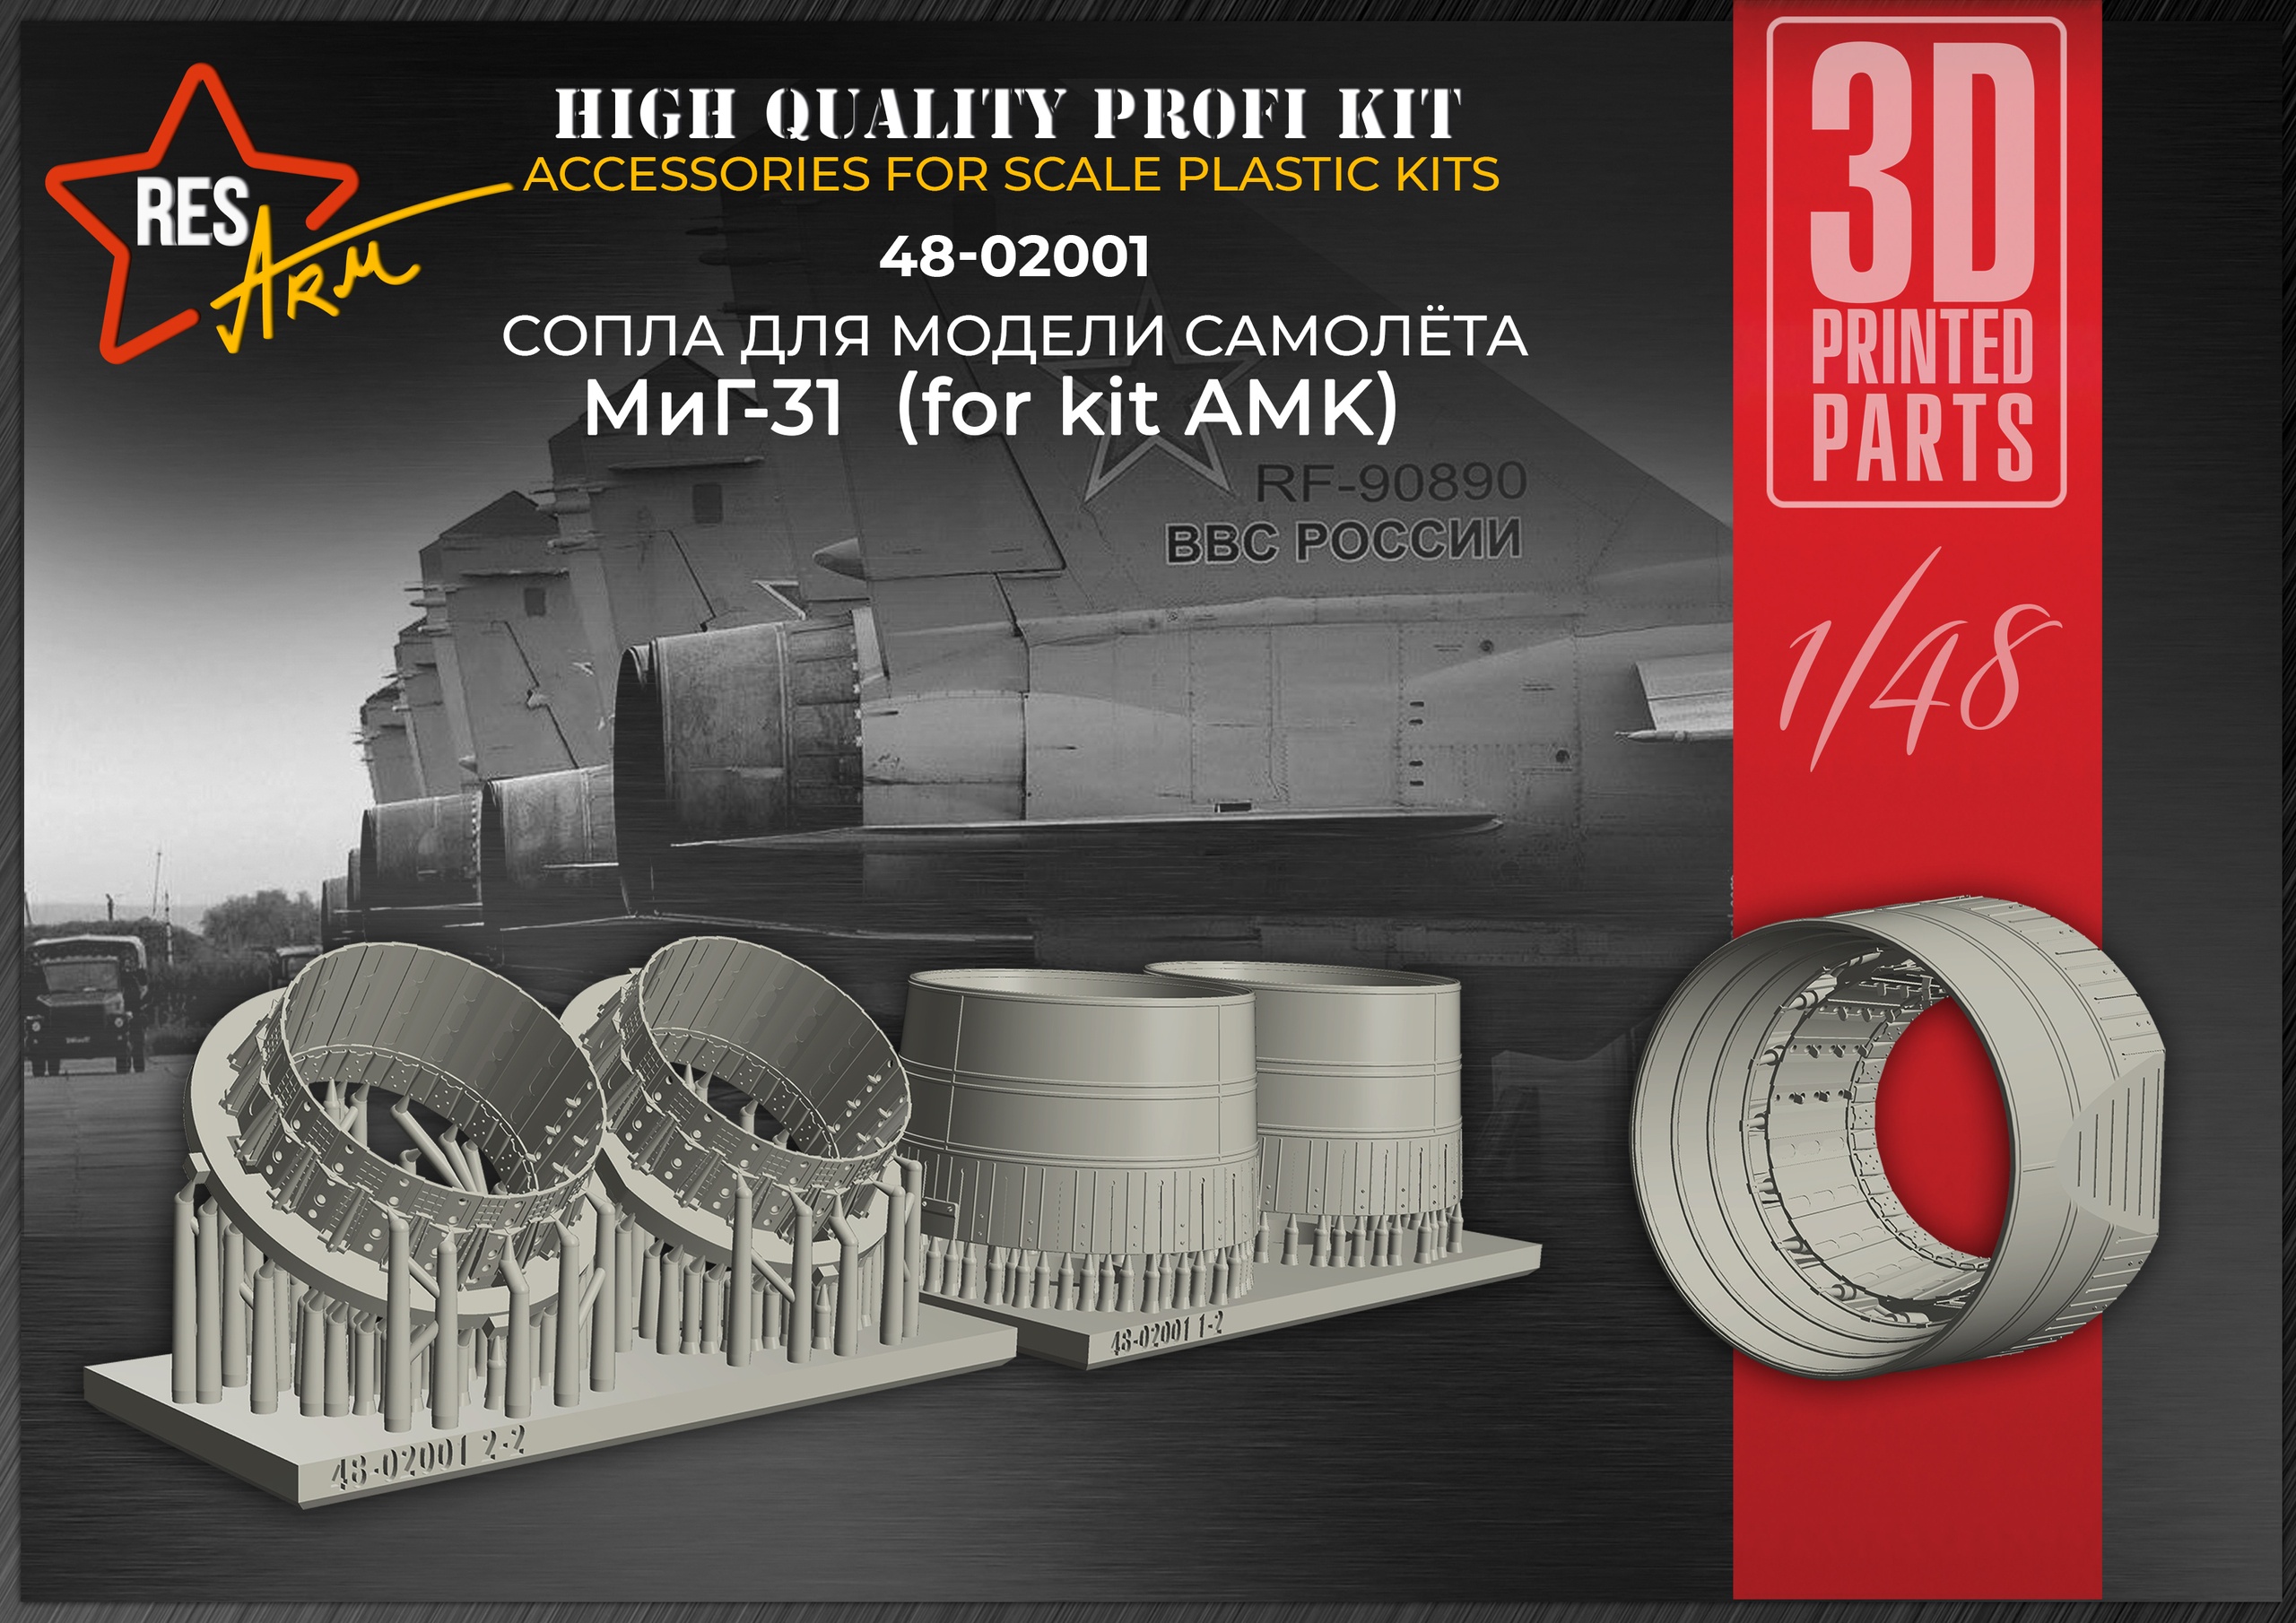 Дополнения из смолы 1/48 Сопла реактивного двигателя МиГ-31 (For kit AMK) (RESarm)